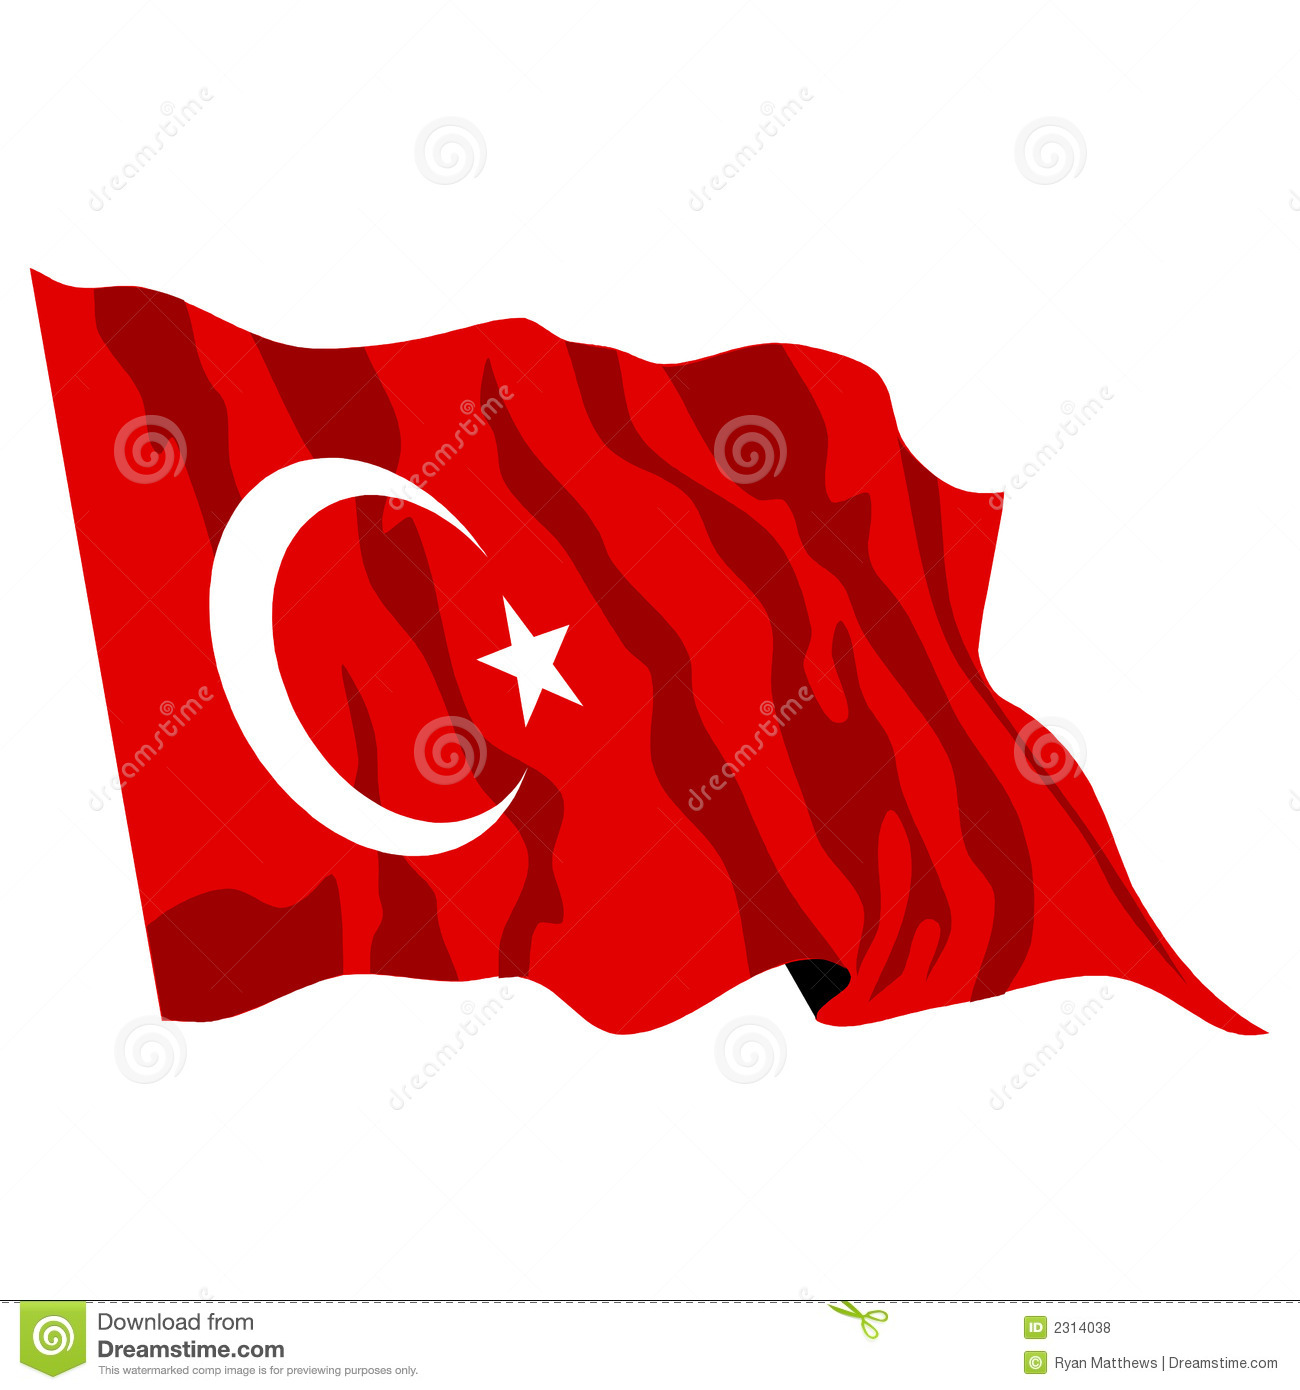 Turkey Flag Illustration Royalty Free Stock Photos   Image  2314038